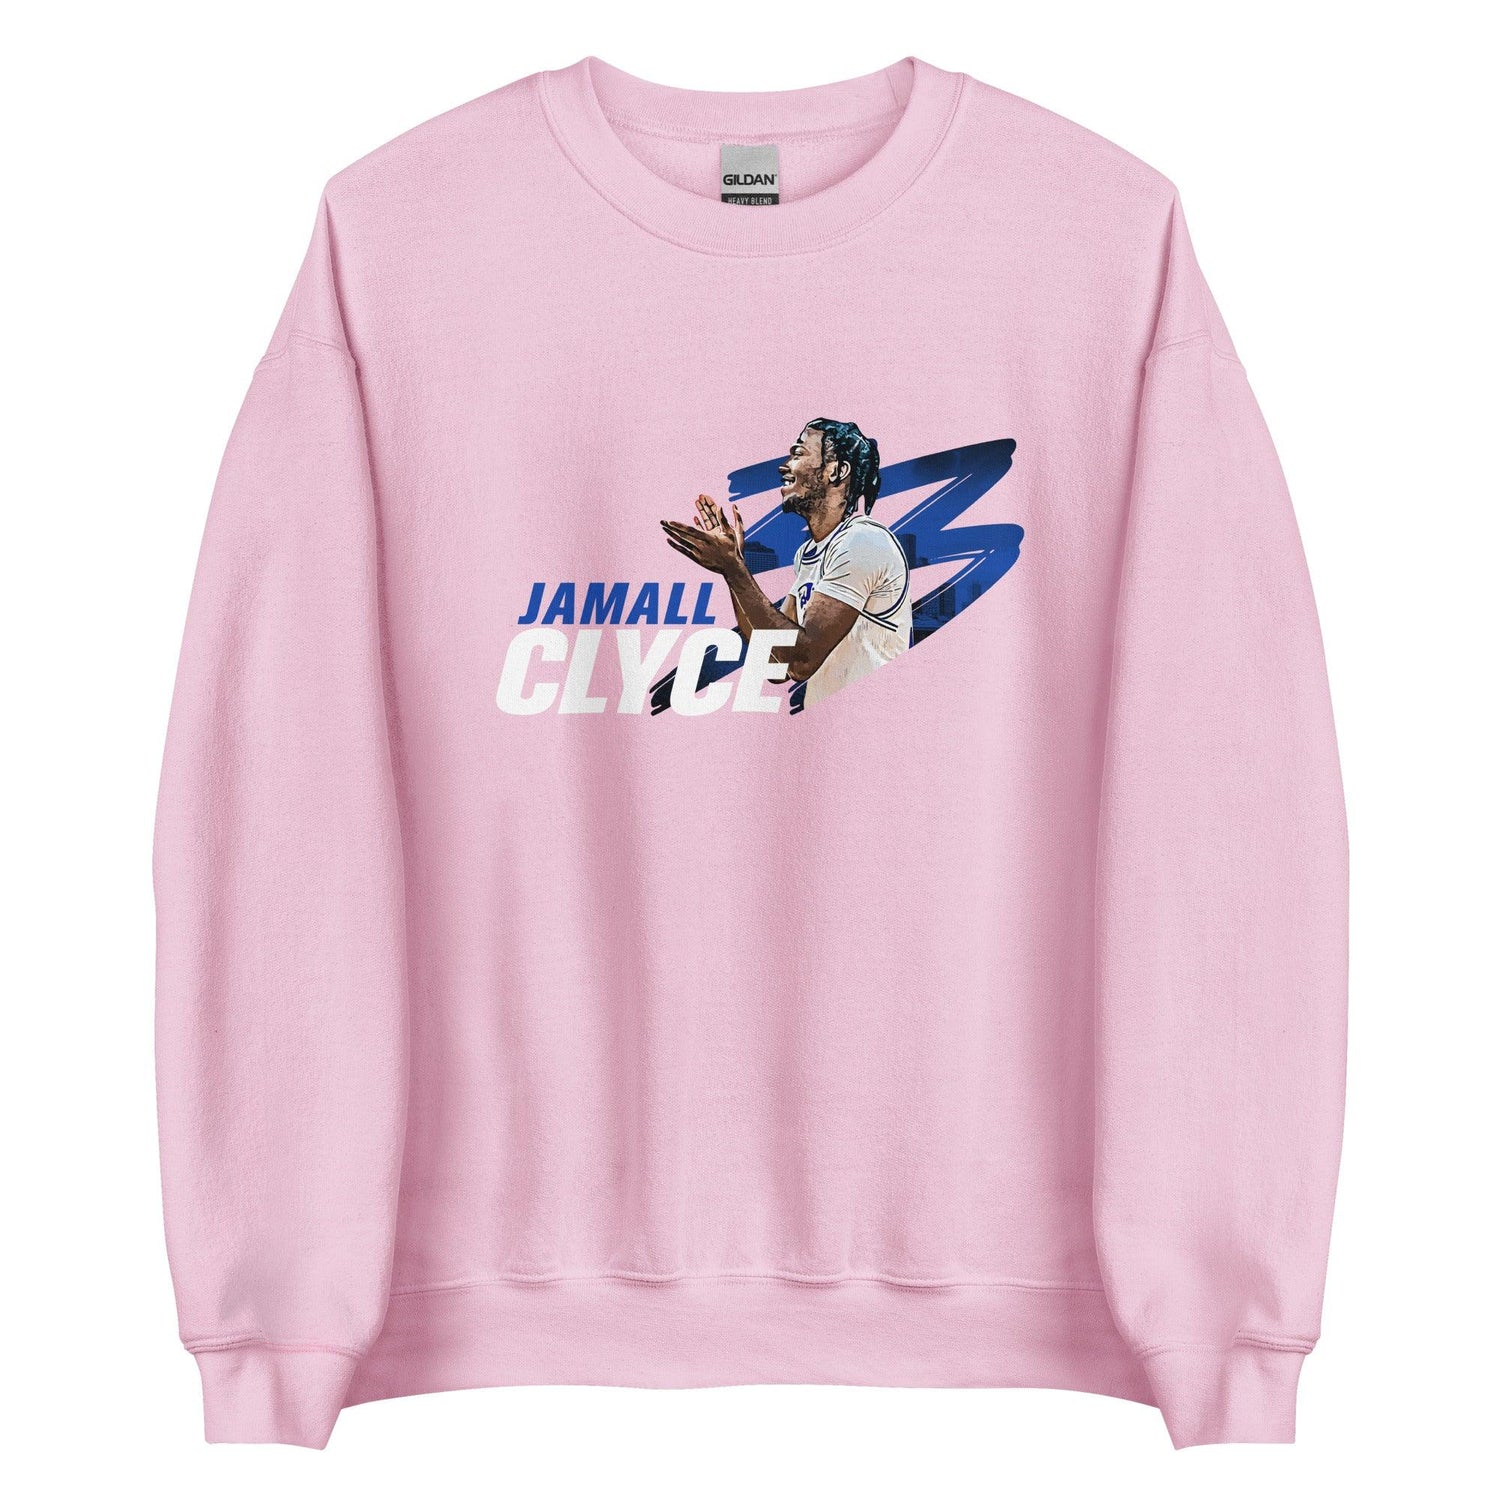 Jamall Clyce "Gameday" Sweatshirt - Fan Arch